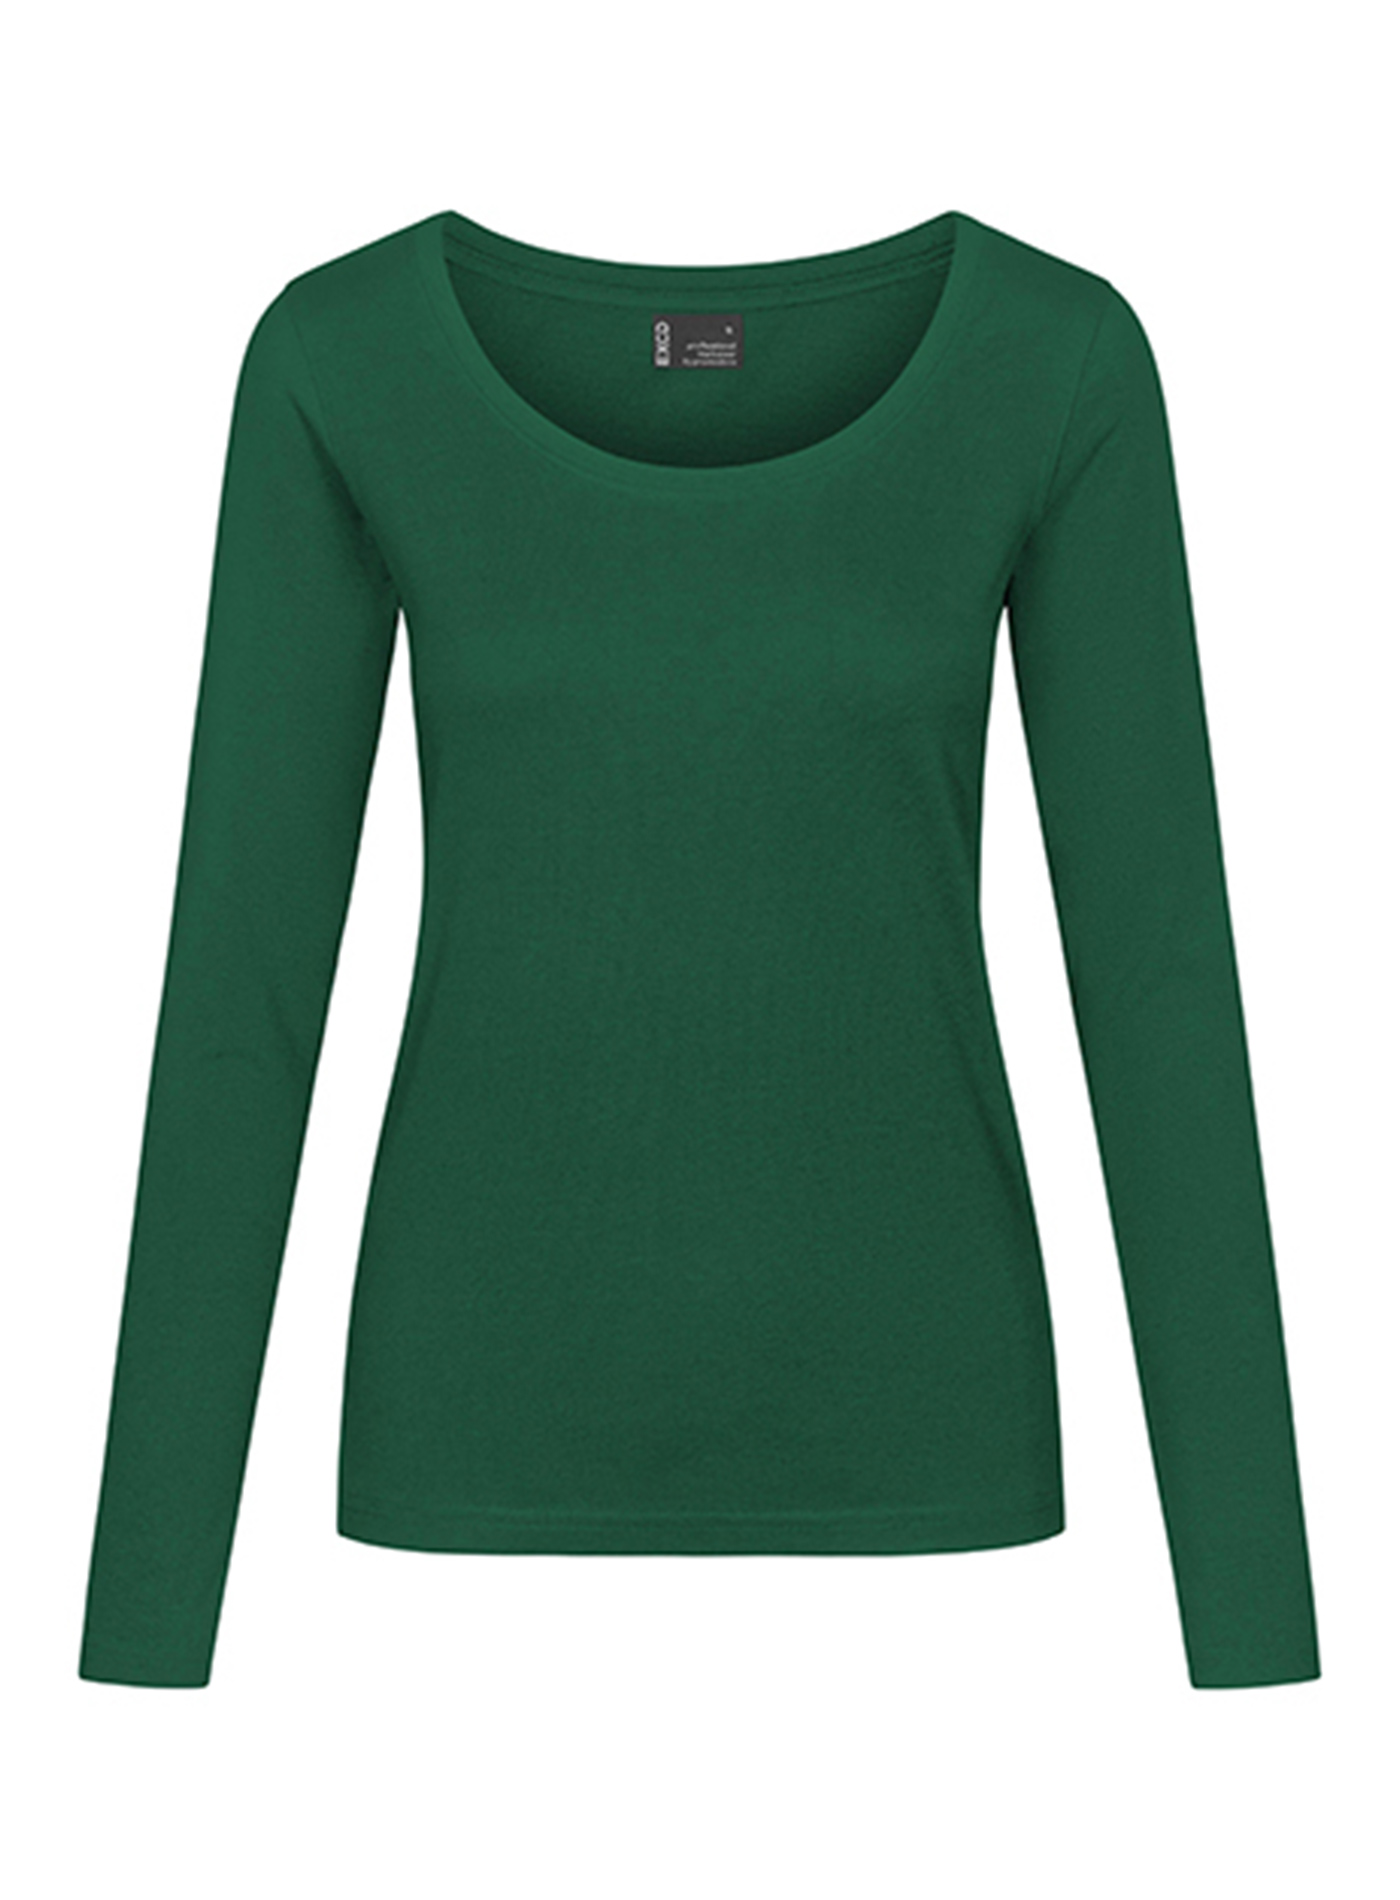 Dámské tričko s dlouhým rukávem Promodoro - Zelená S